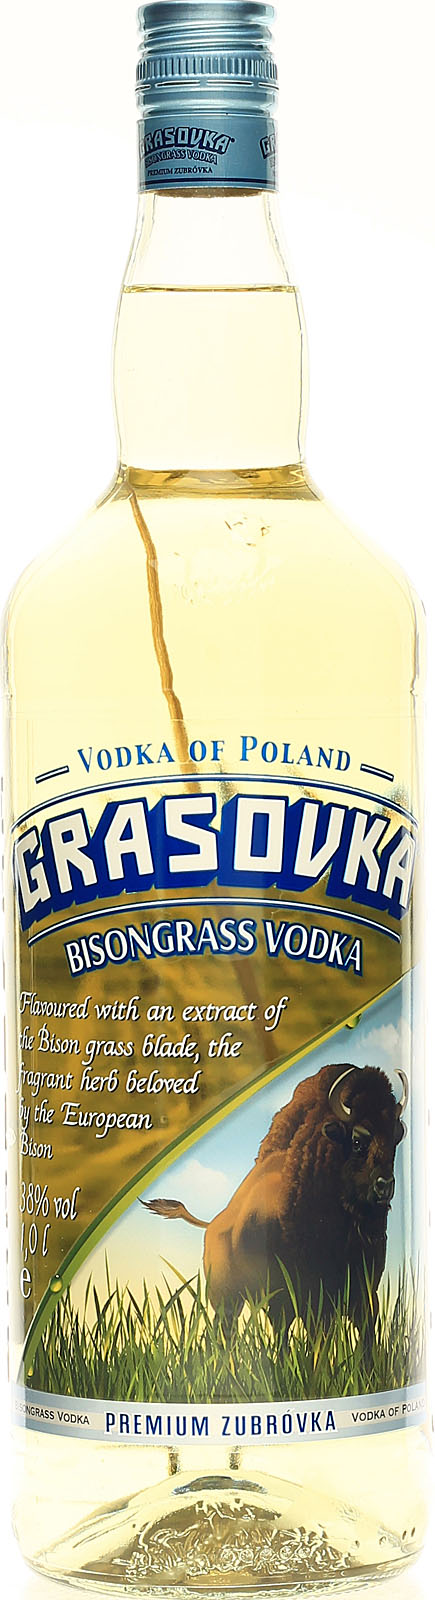 Grasovka Bison Grass Vodka 1 Liter mit Büffelgras hier | Vodka